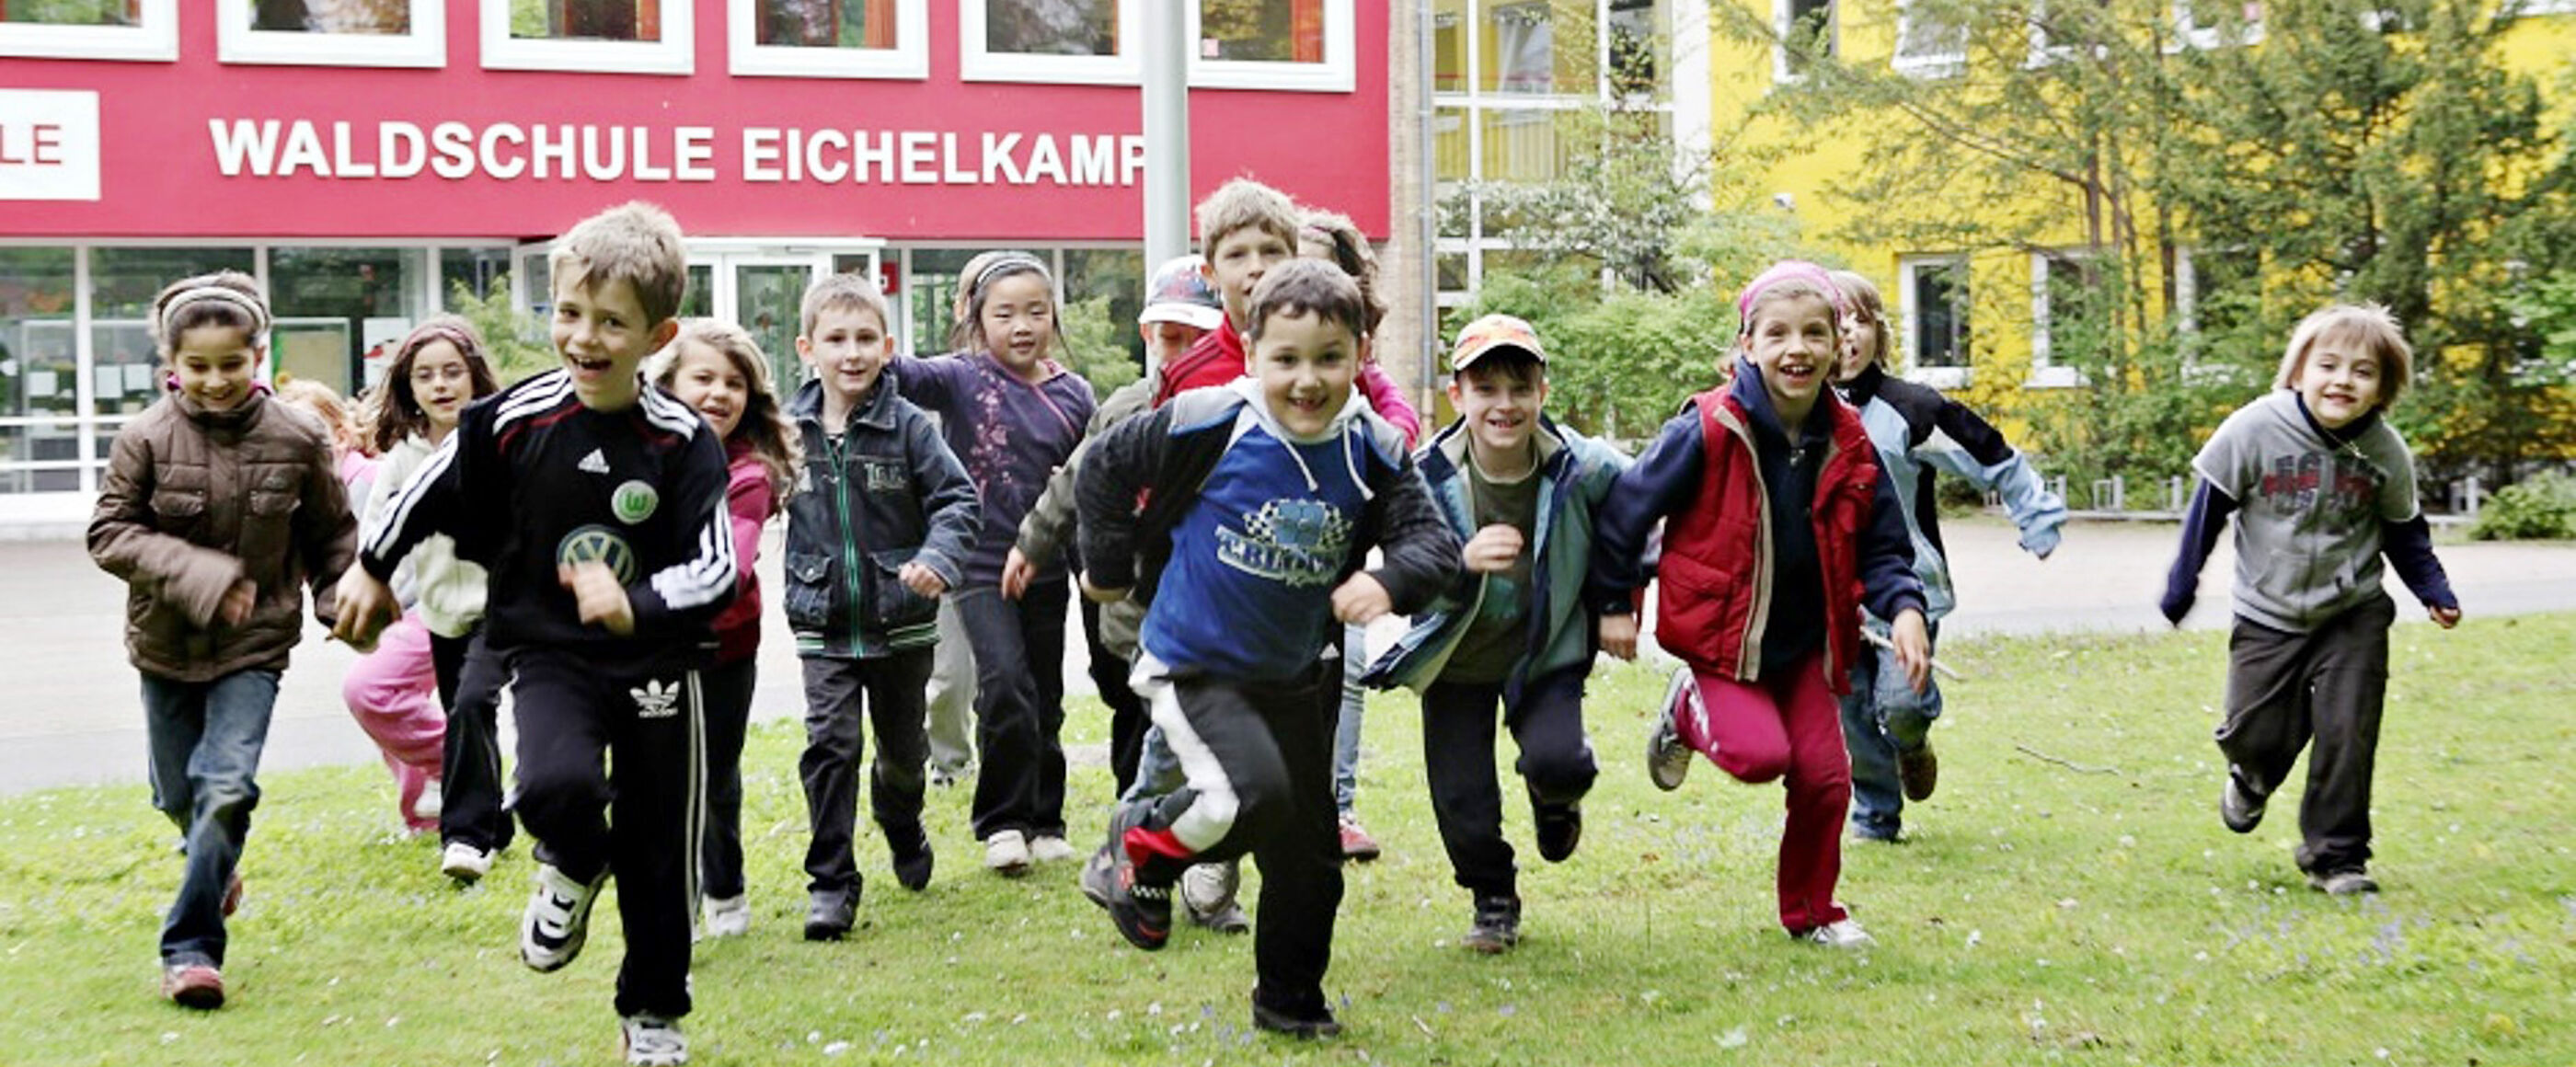 Kinder laufen vor einem roten Schulgebäude auf die Kamera zu